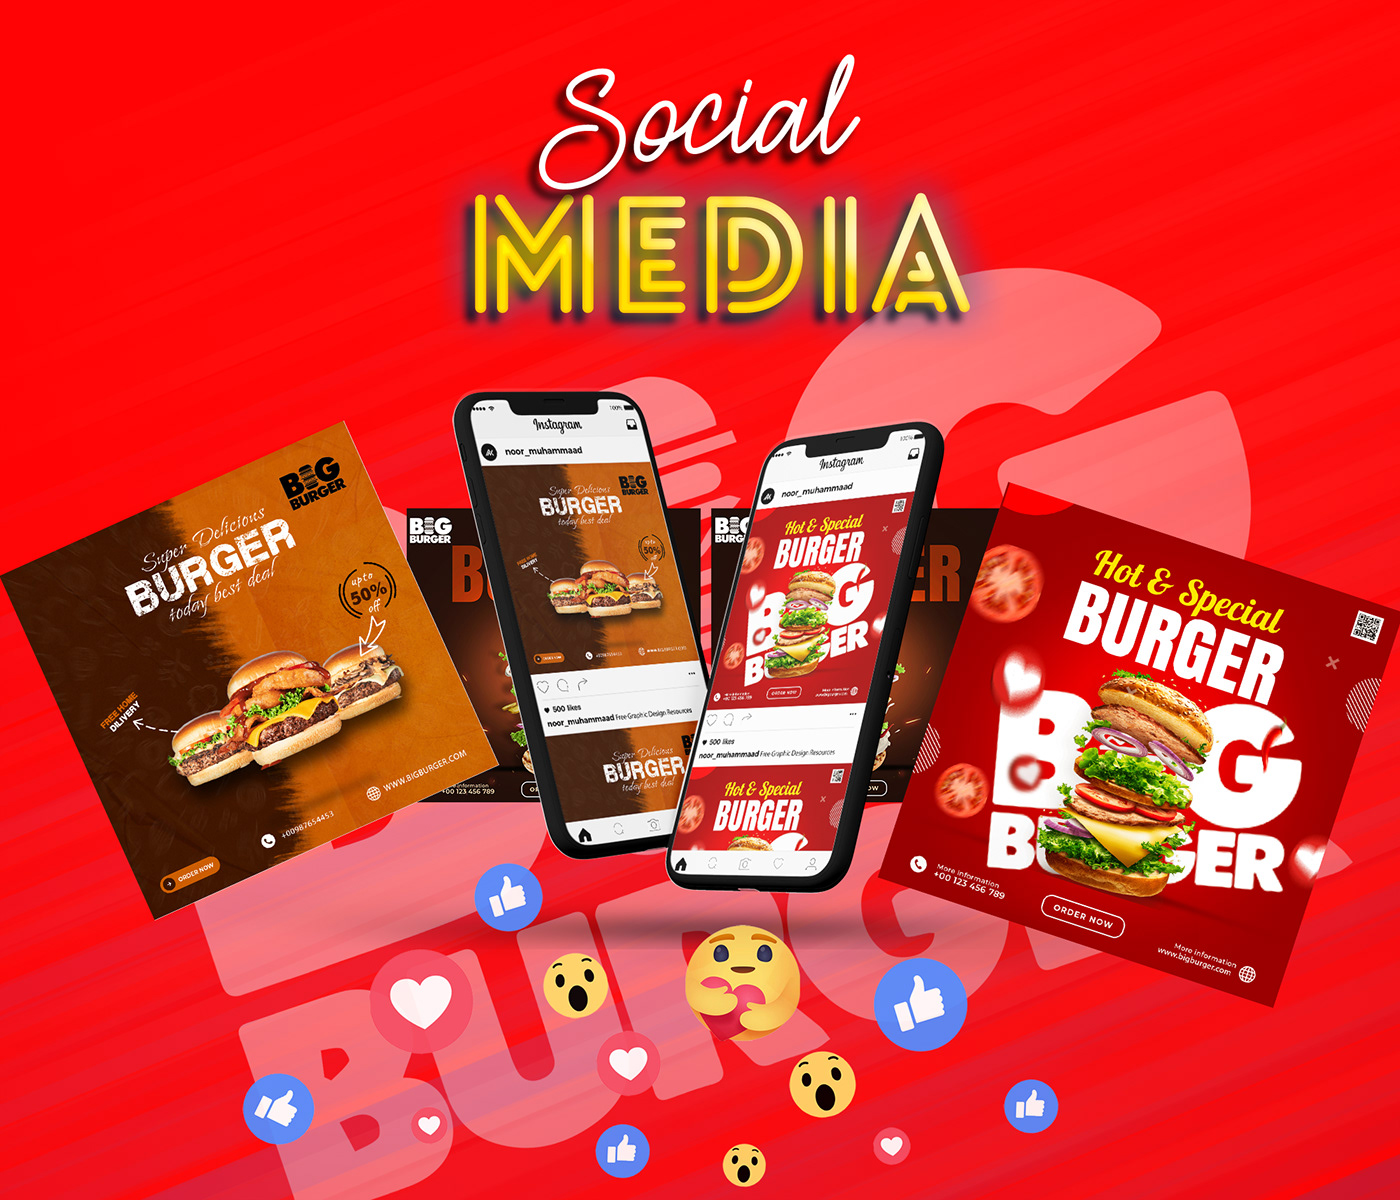 Social Media Post Design Social Media Design social media burger social media post